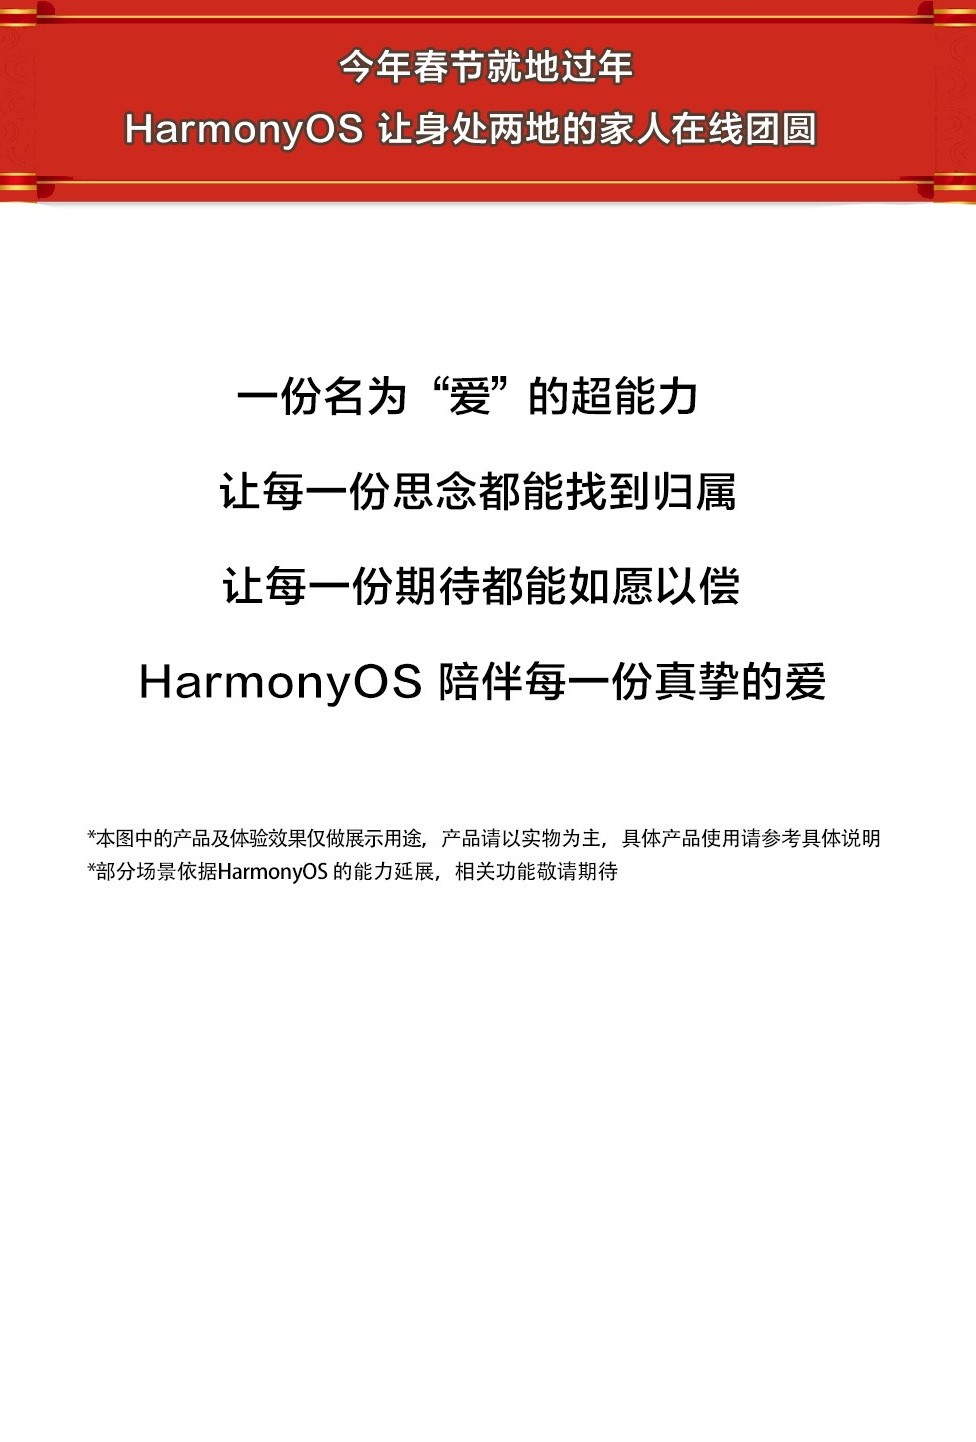 今年春节 HarmonyOS 陪伴每一份真挚的爱-鸿蒙开发者社区